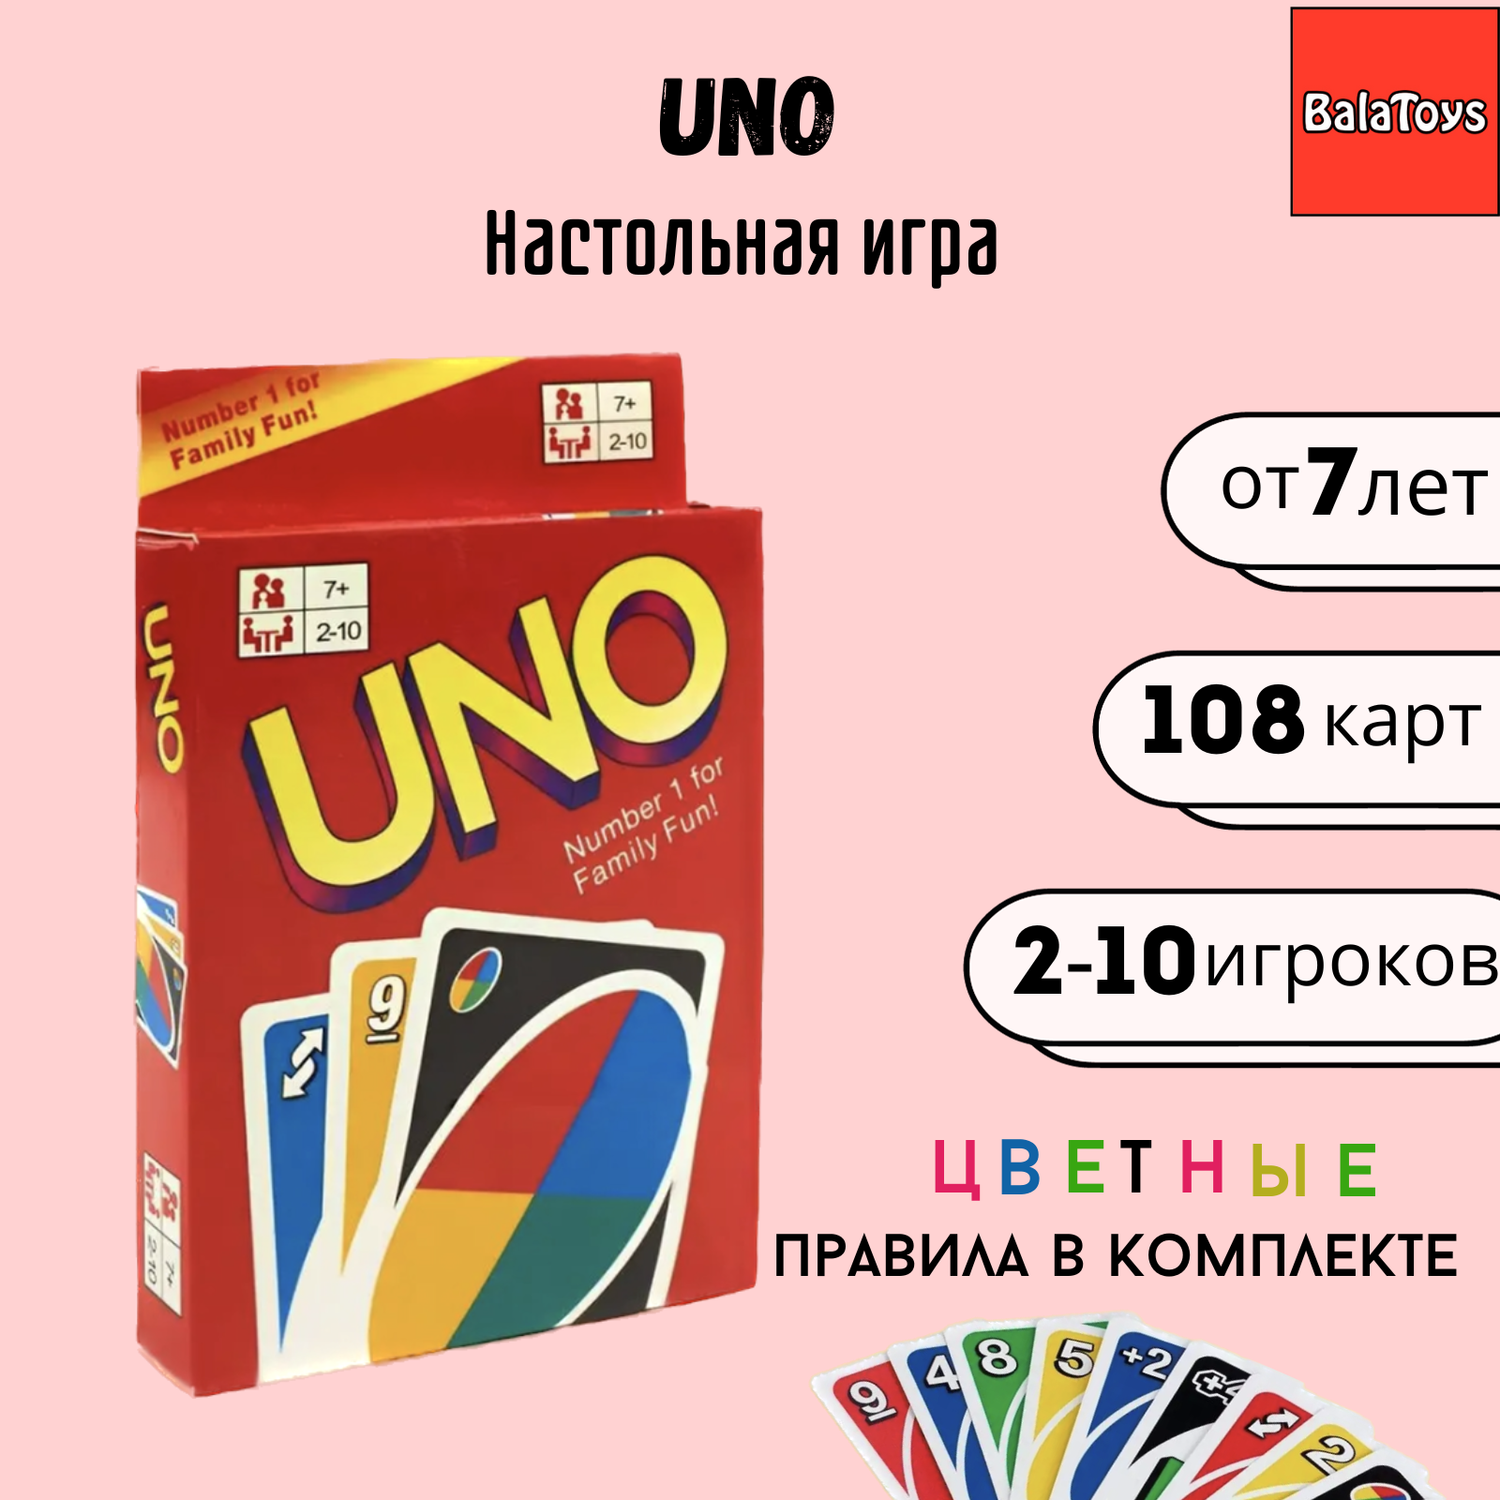 UNO карточная игра BalaToys настольная игра Уно - фото 1